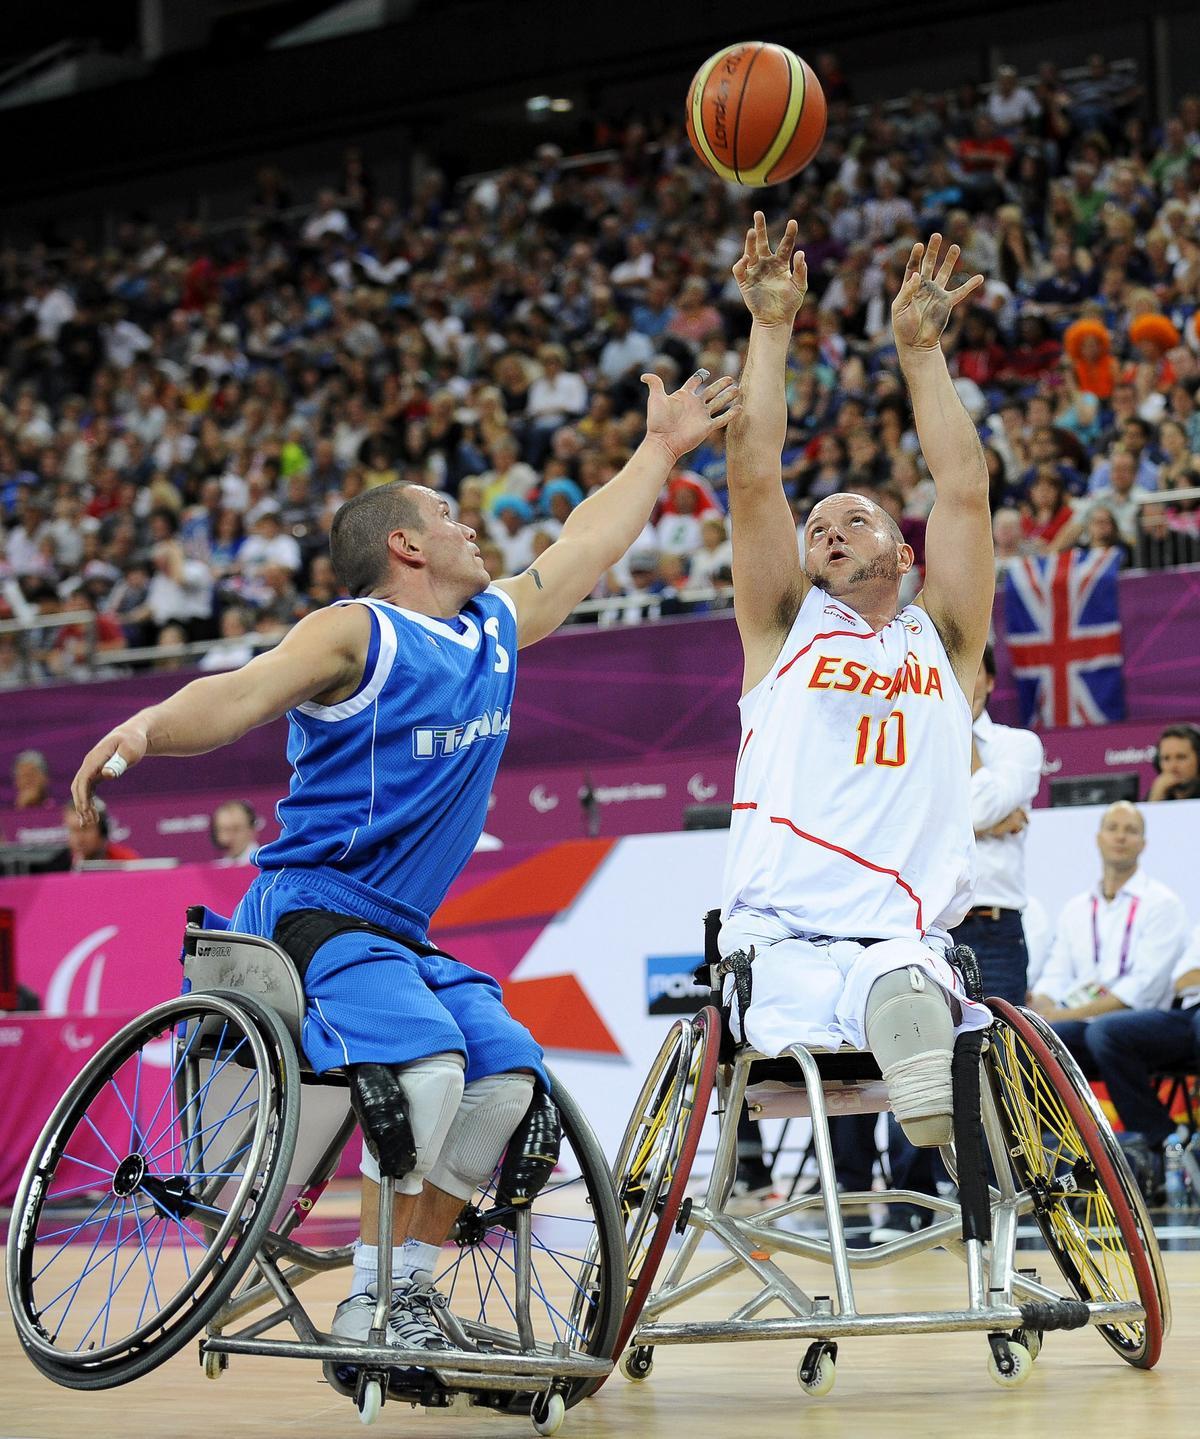 Dos deportistas practican baloncesto en silla de ruedas.